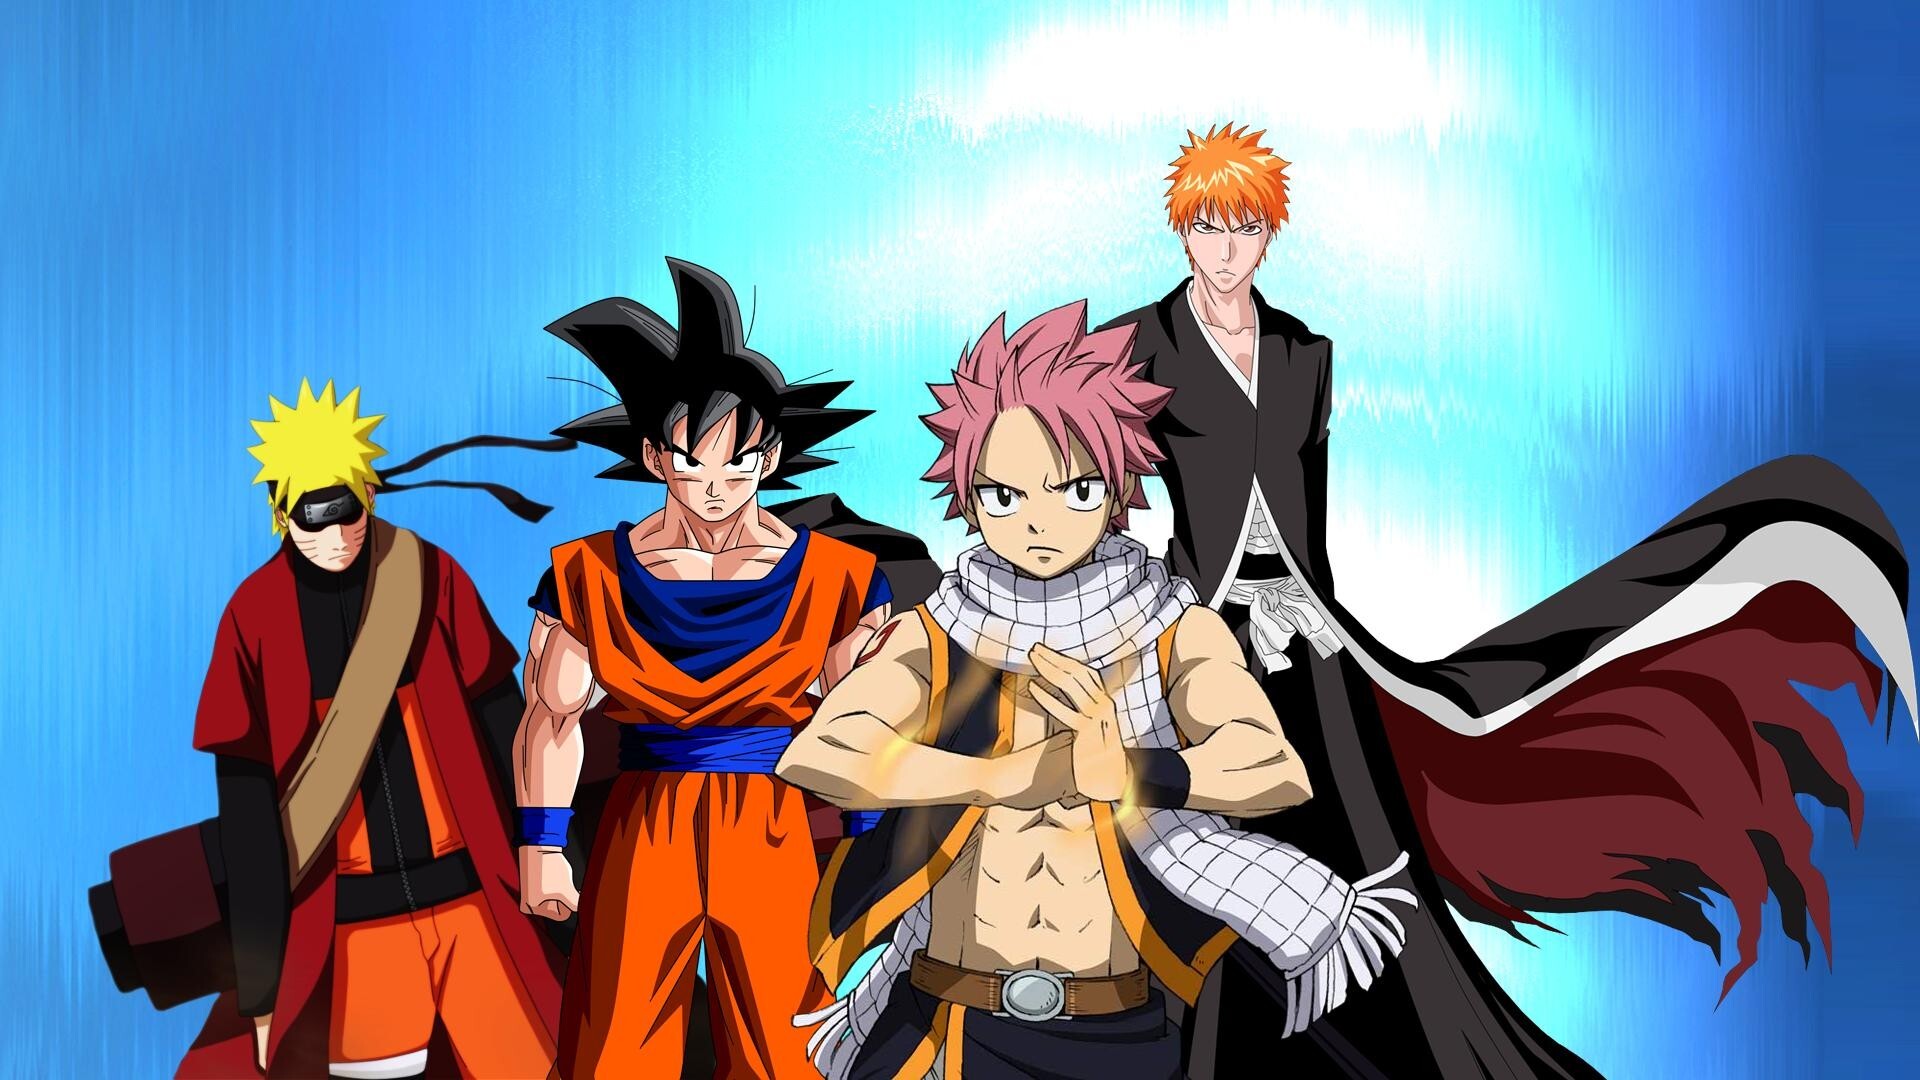 Goku and Naruto: Naruto's Six Paths Sage Mode, Luffy Gear 4th, Natsu y Ichigo, Superhuman strength. 1920x1080 Full HD Wallpaper.